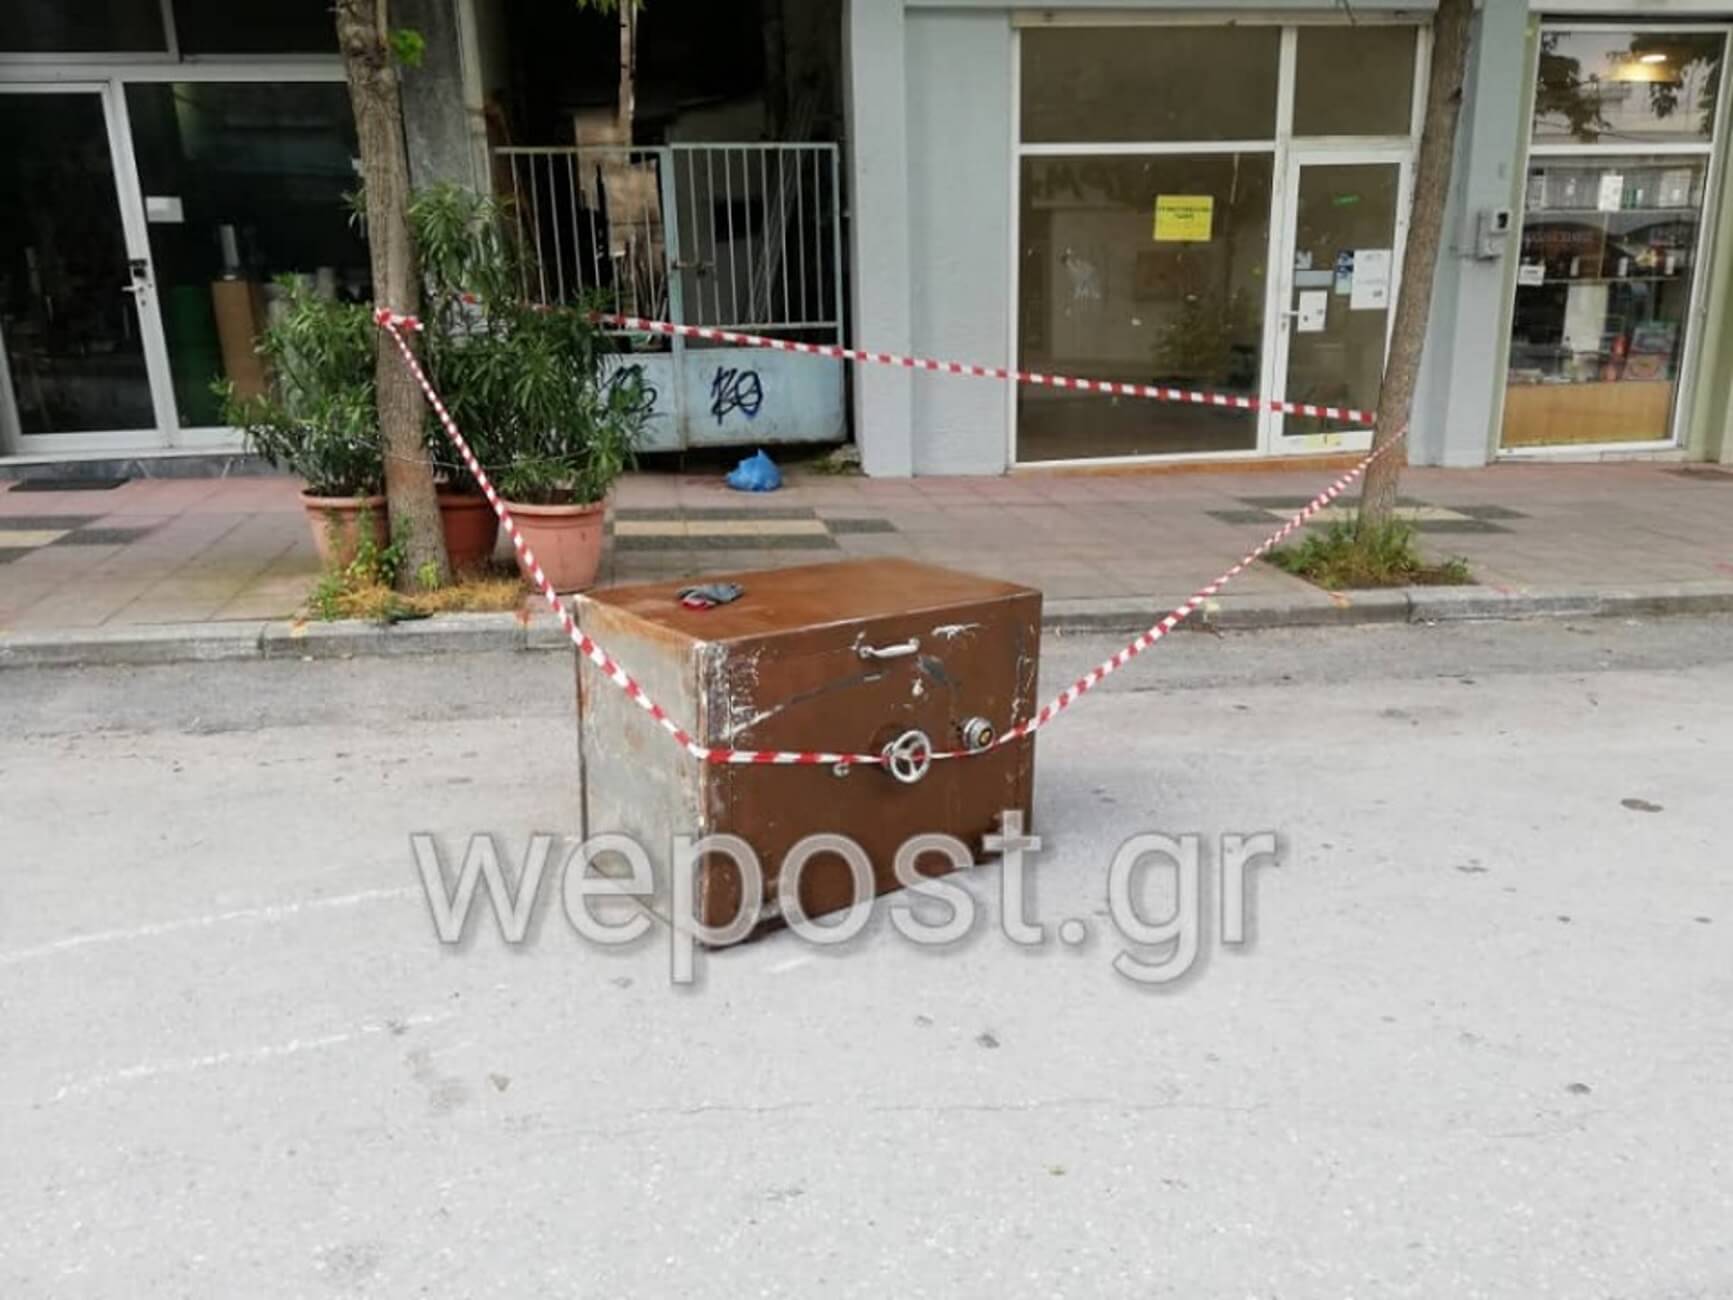 Θεσσαλονίκη: Διέλυσαν το κοσμηματοπωλείο αλλά παράτησαν το χρηματοκιβώτιο στη μέση του δρόμου [pics, video]